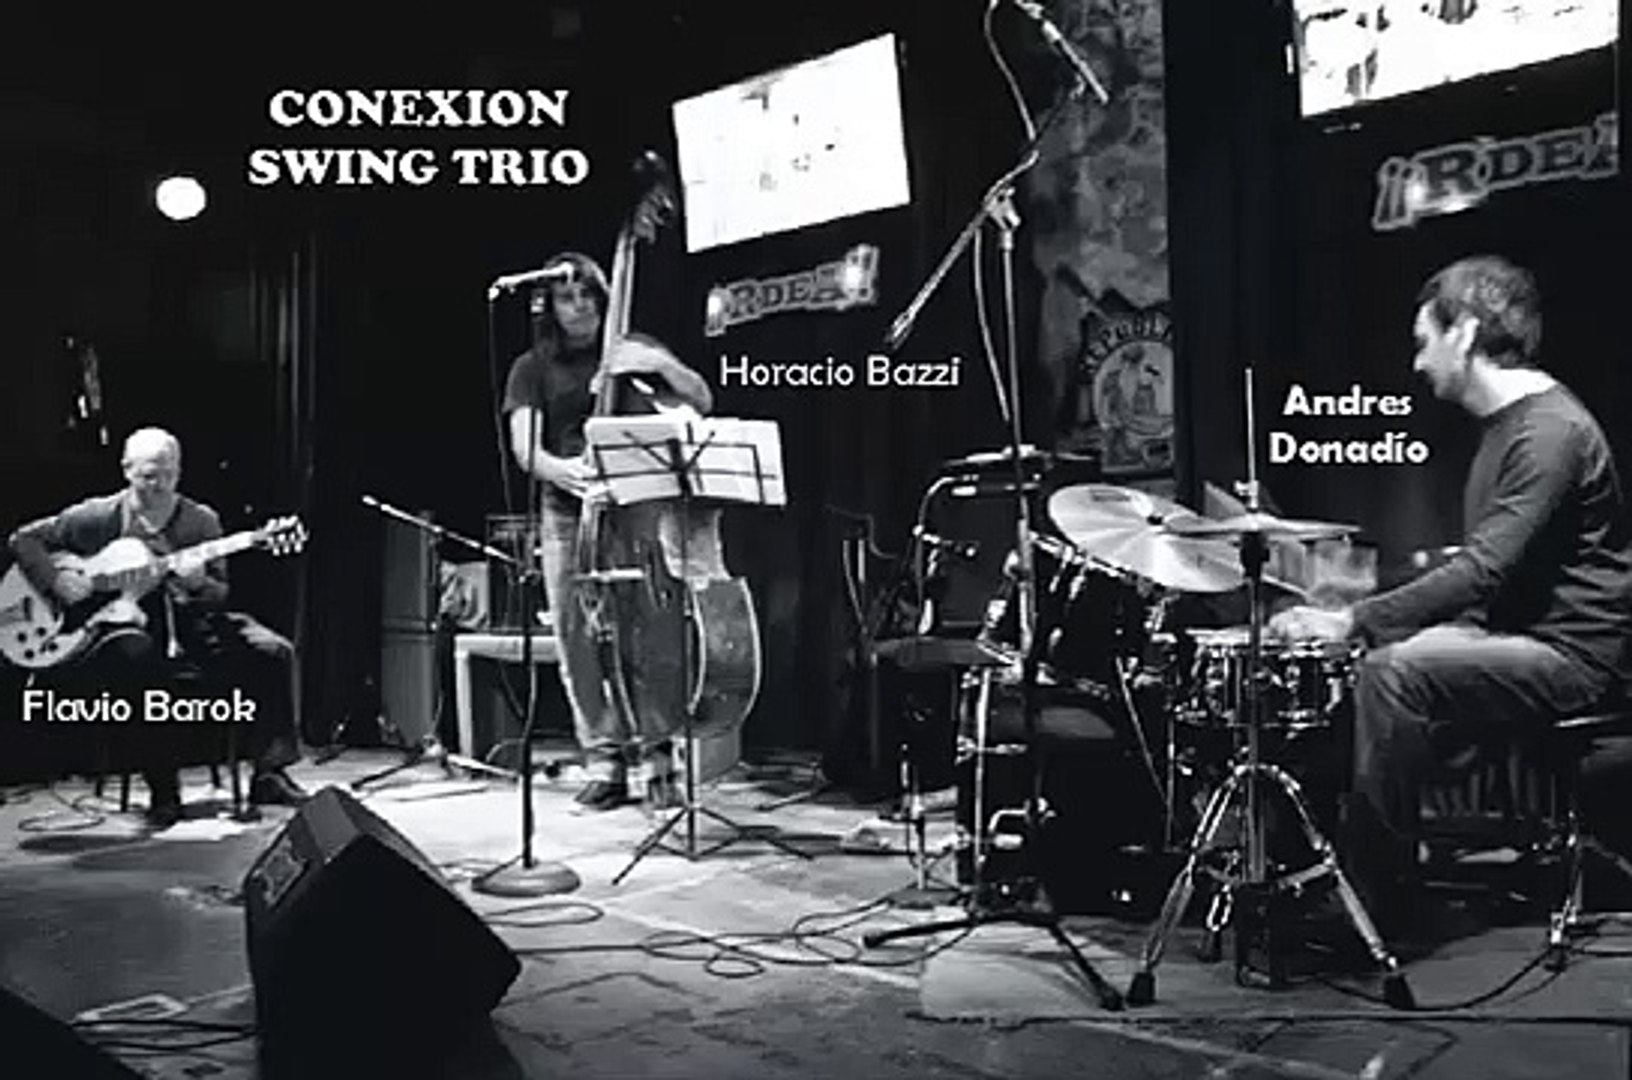 CONEXION SWING TRIO - Gone With the Wind (Allie Wrubel) en vivo 2-10-2013